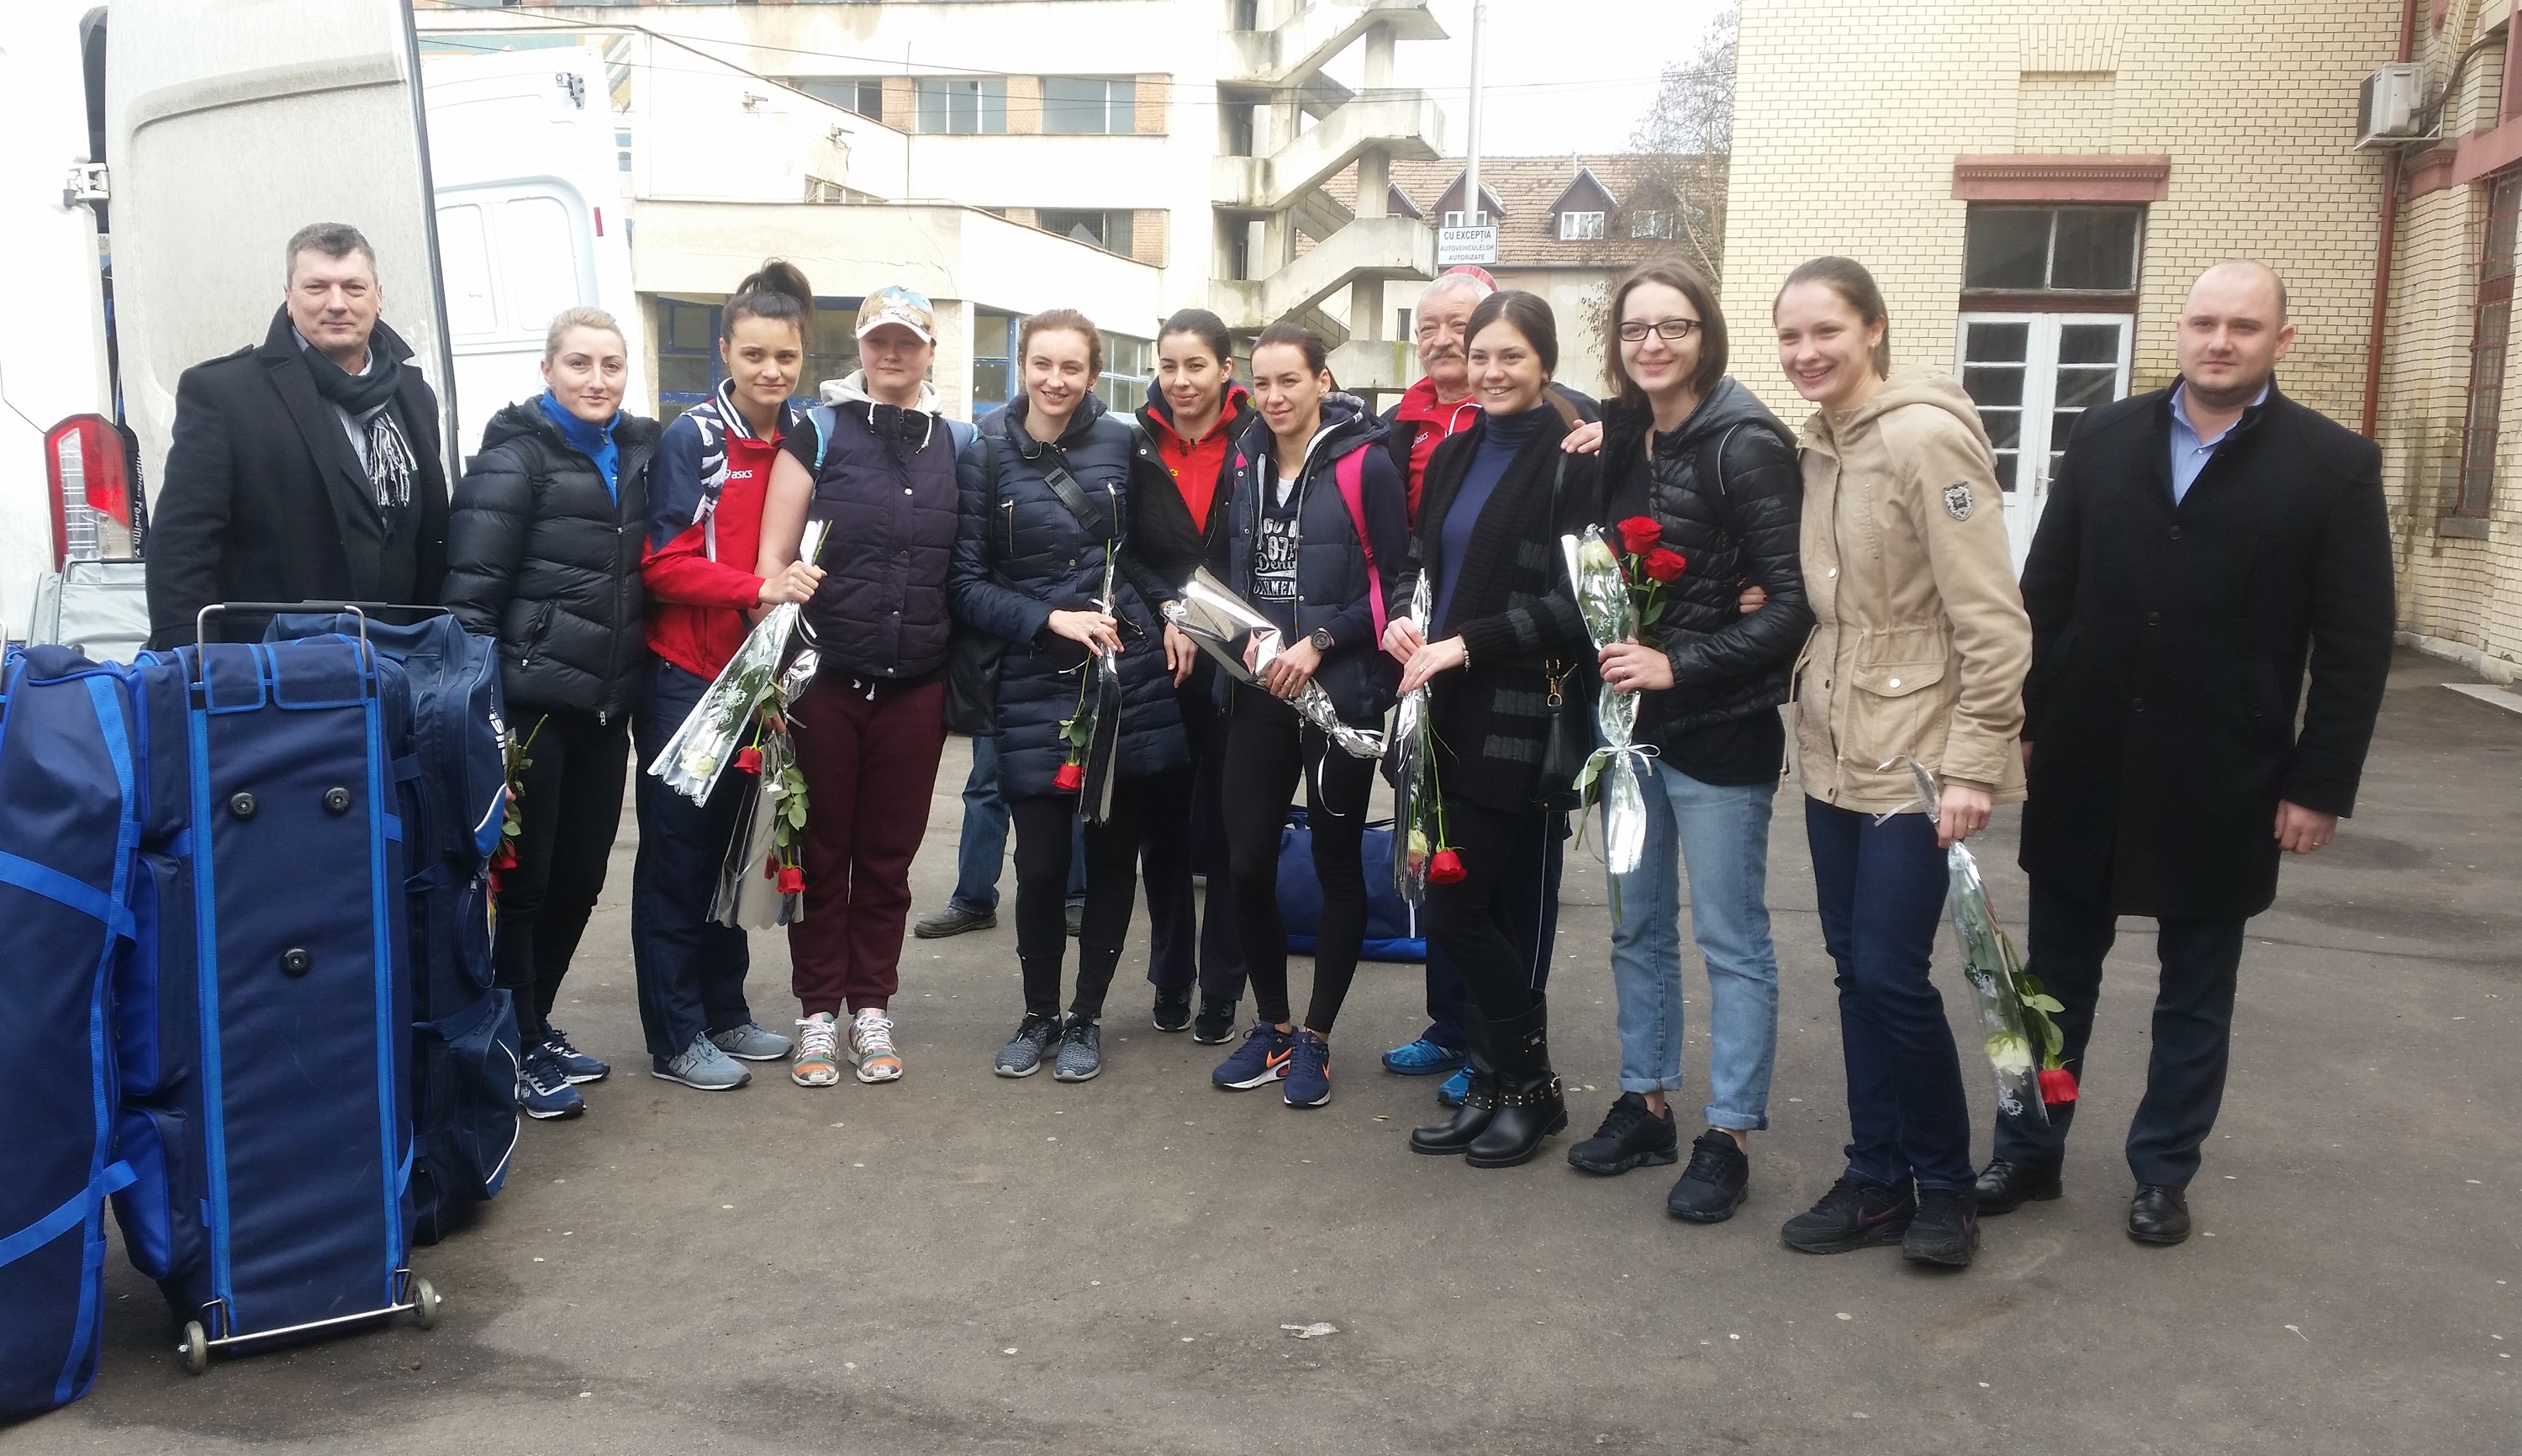 Lotul de spadă feminin al României a fost primit cu flori la Satu Mare. Ana Maria Popescu: „Am amintiri frumoase de la Satu Mare. Aici am câștigat primele medalii!”